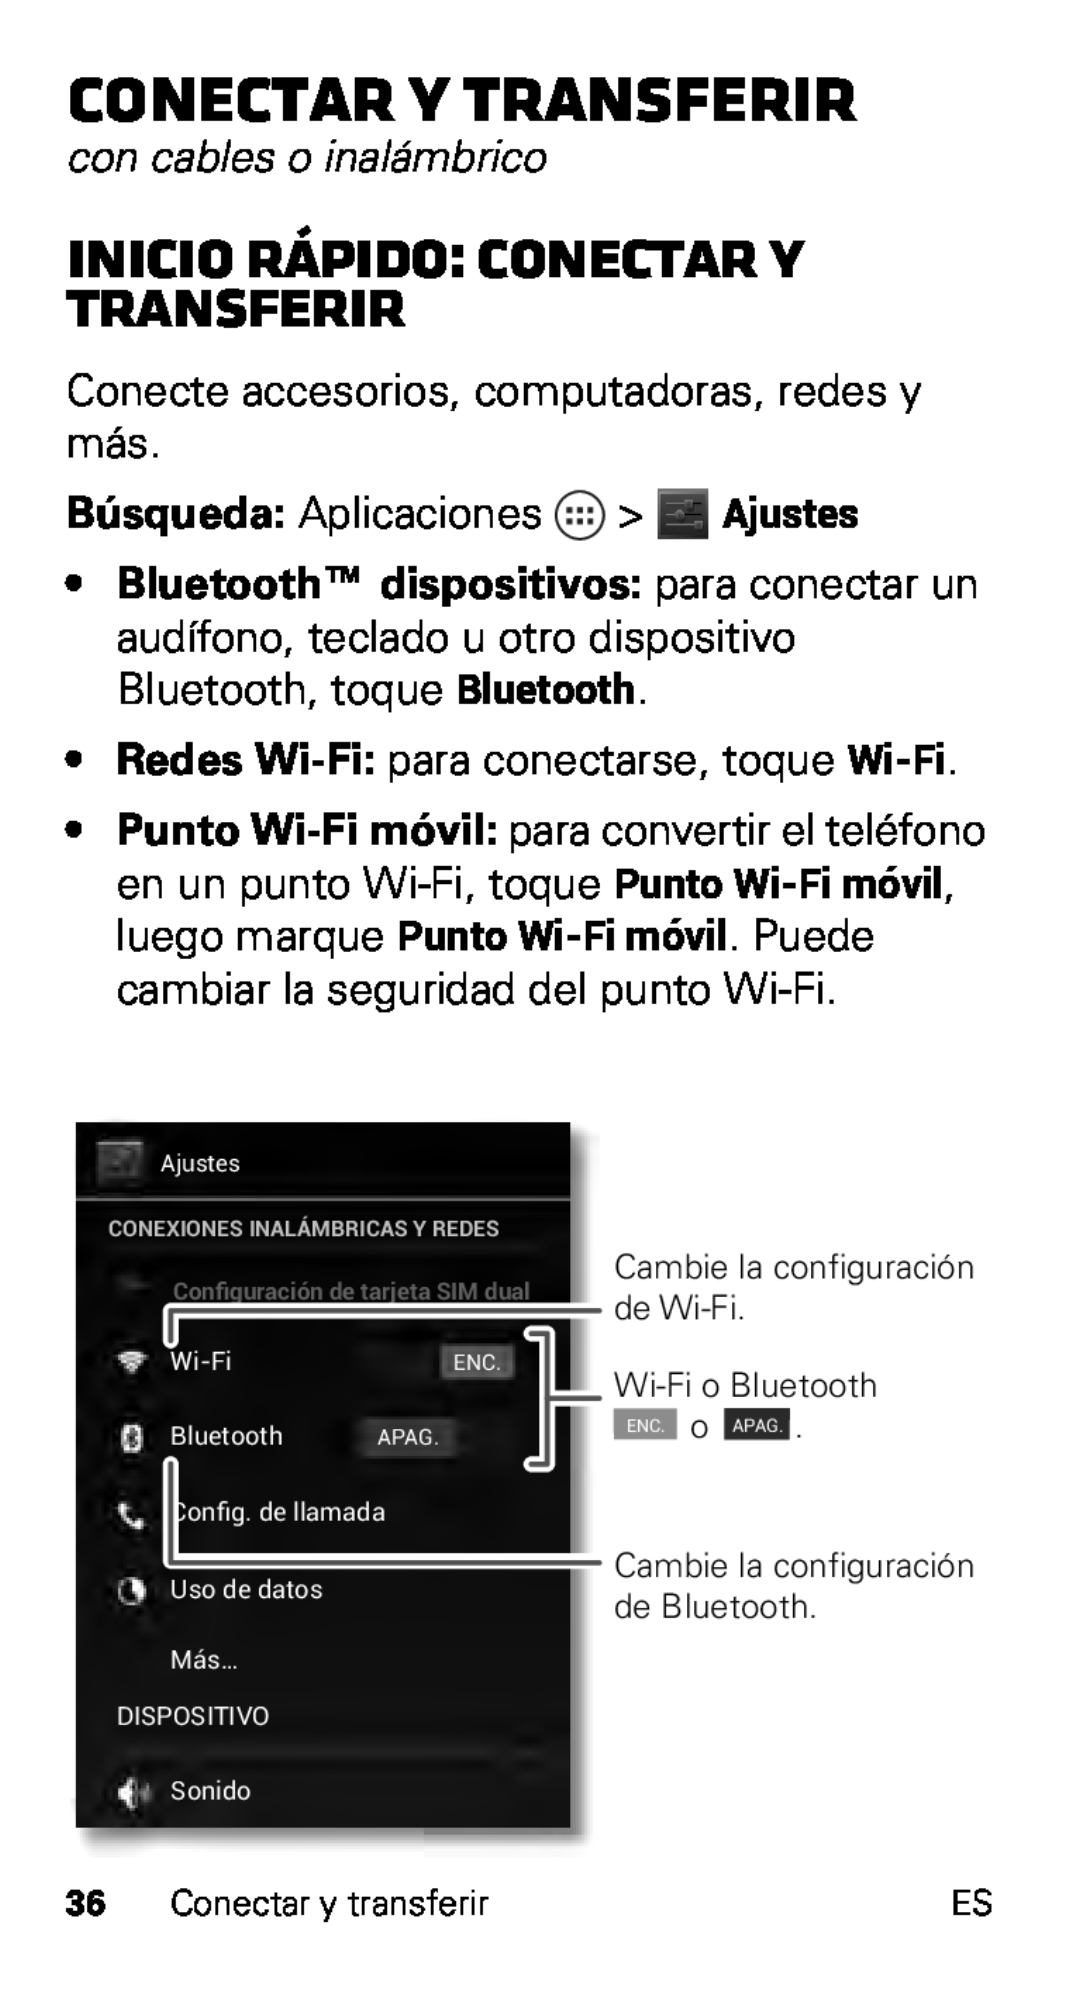 Motorola XT915 Inicio rápido Conectar y transferir, con cables o inalámbrico, Bluetooth dispositivos para conectar un 